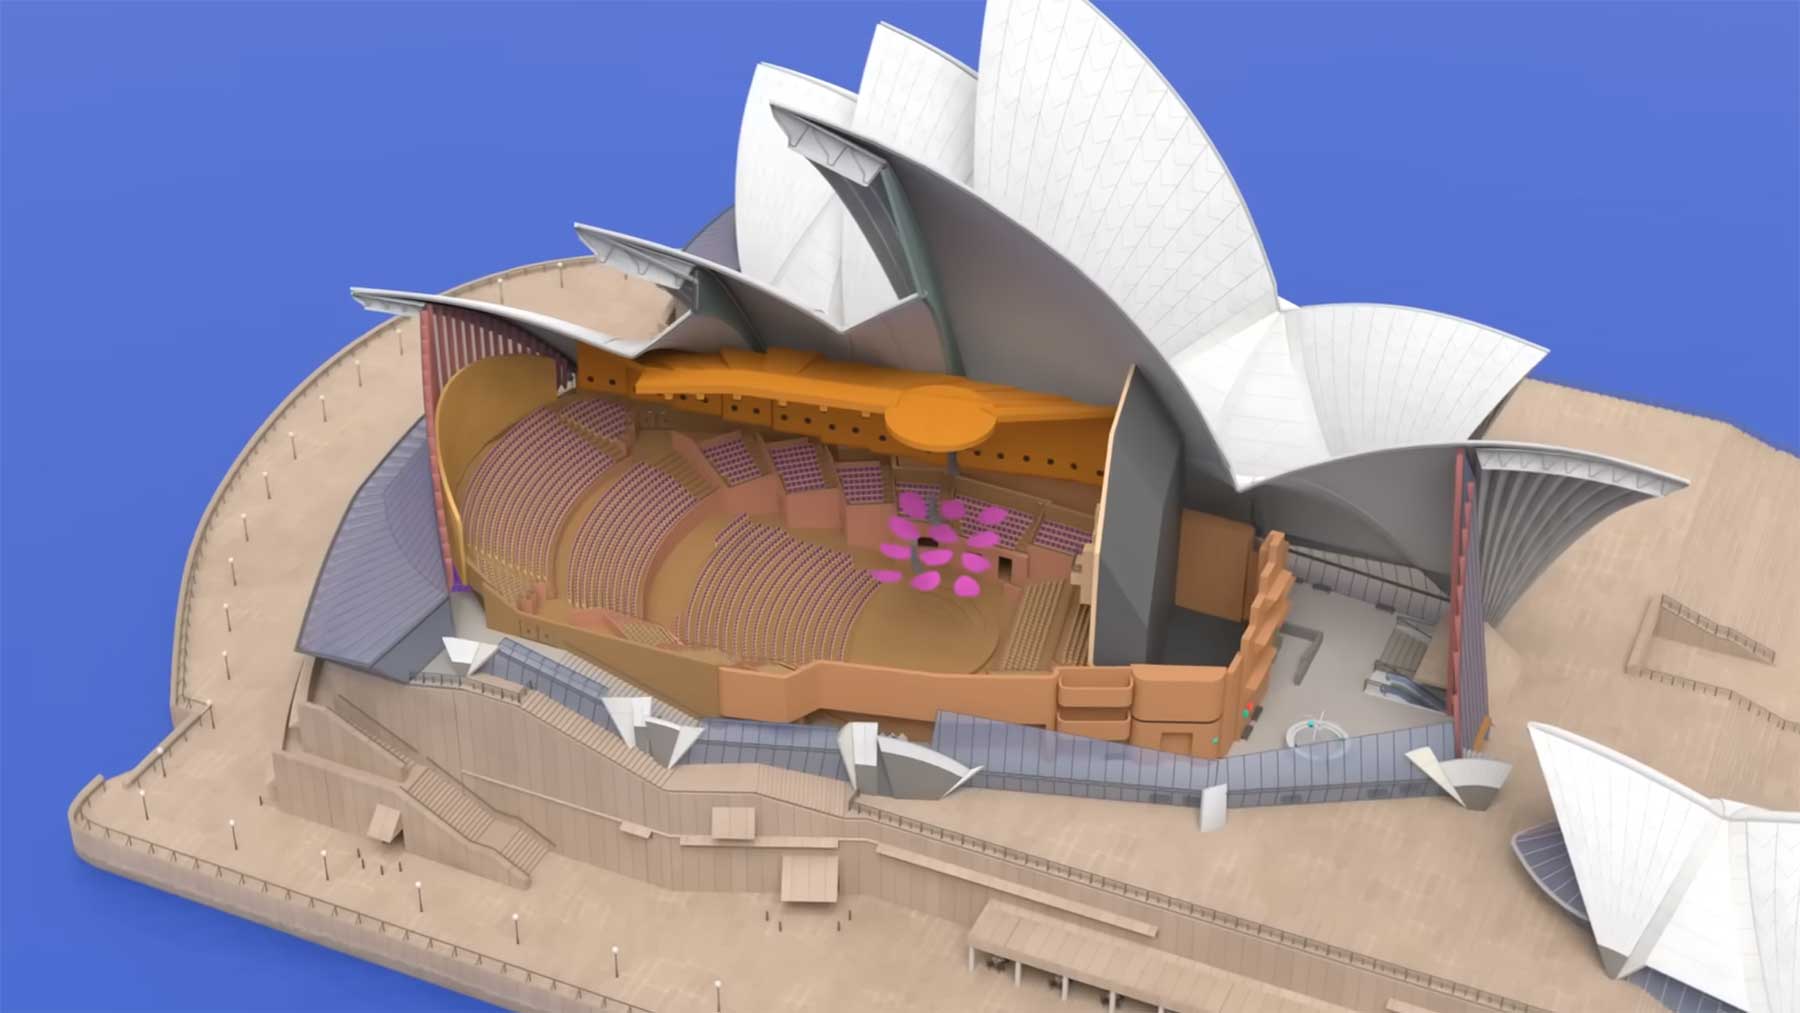 Opernhaus in Sydney: 3D-Animation zeigt, wie das Innere aussieht sydney-opernhaus-3d-cgi-tour 